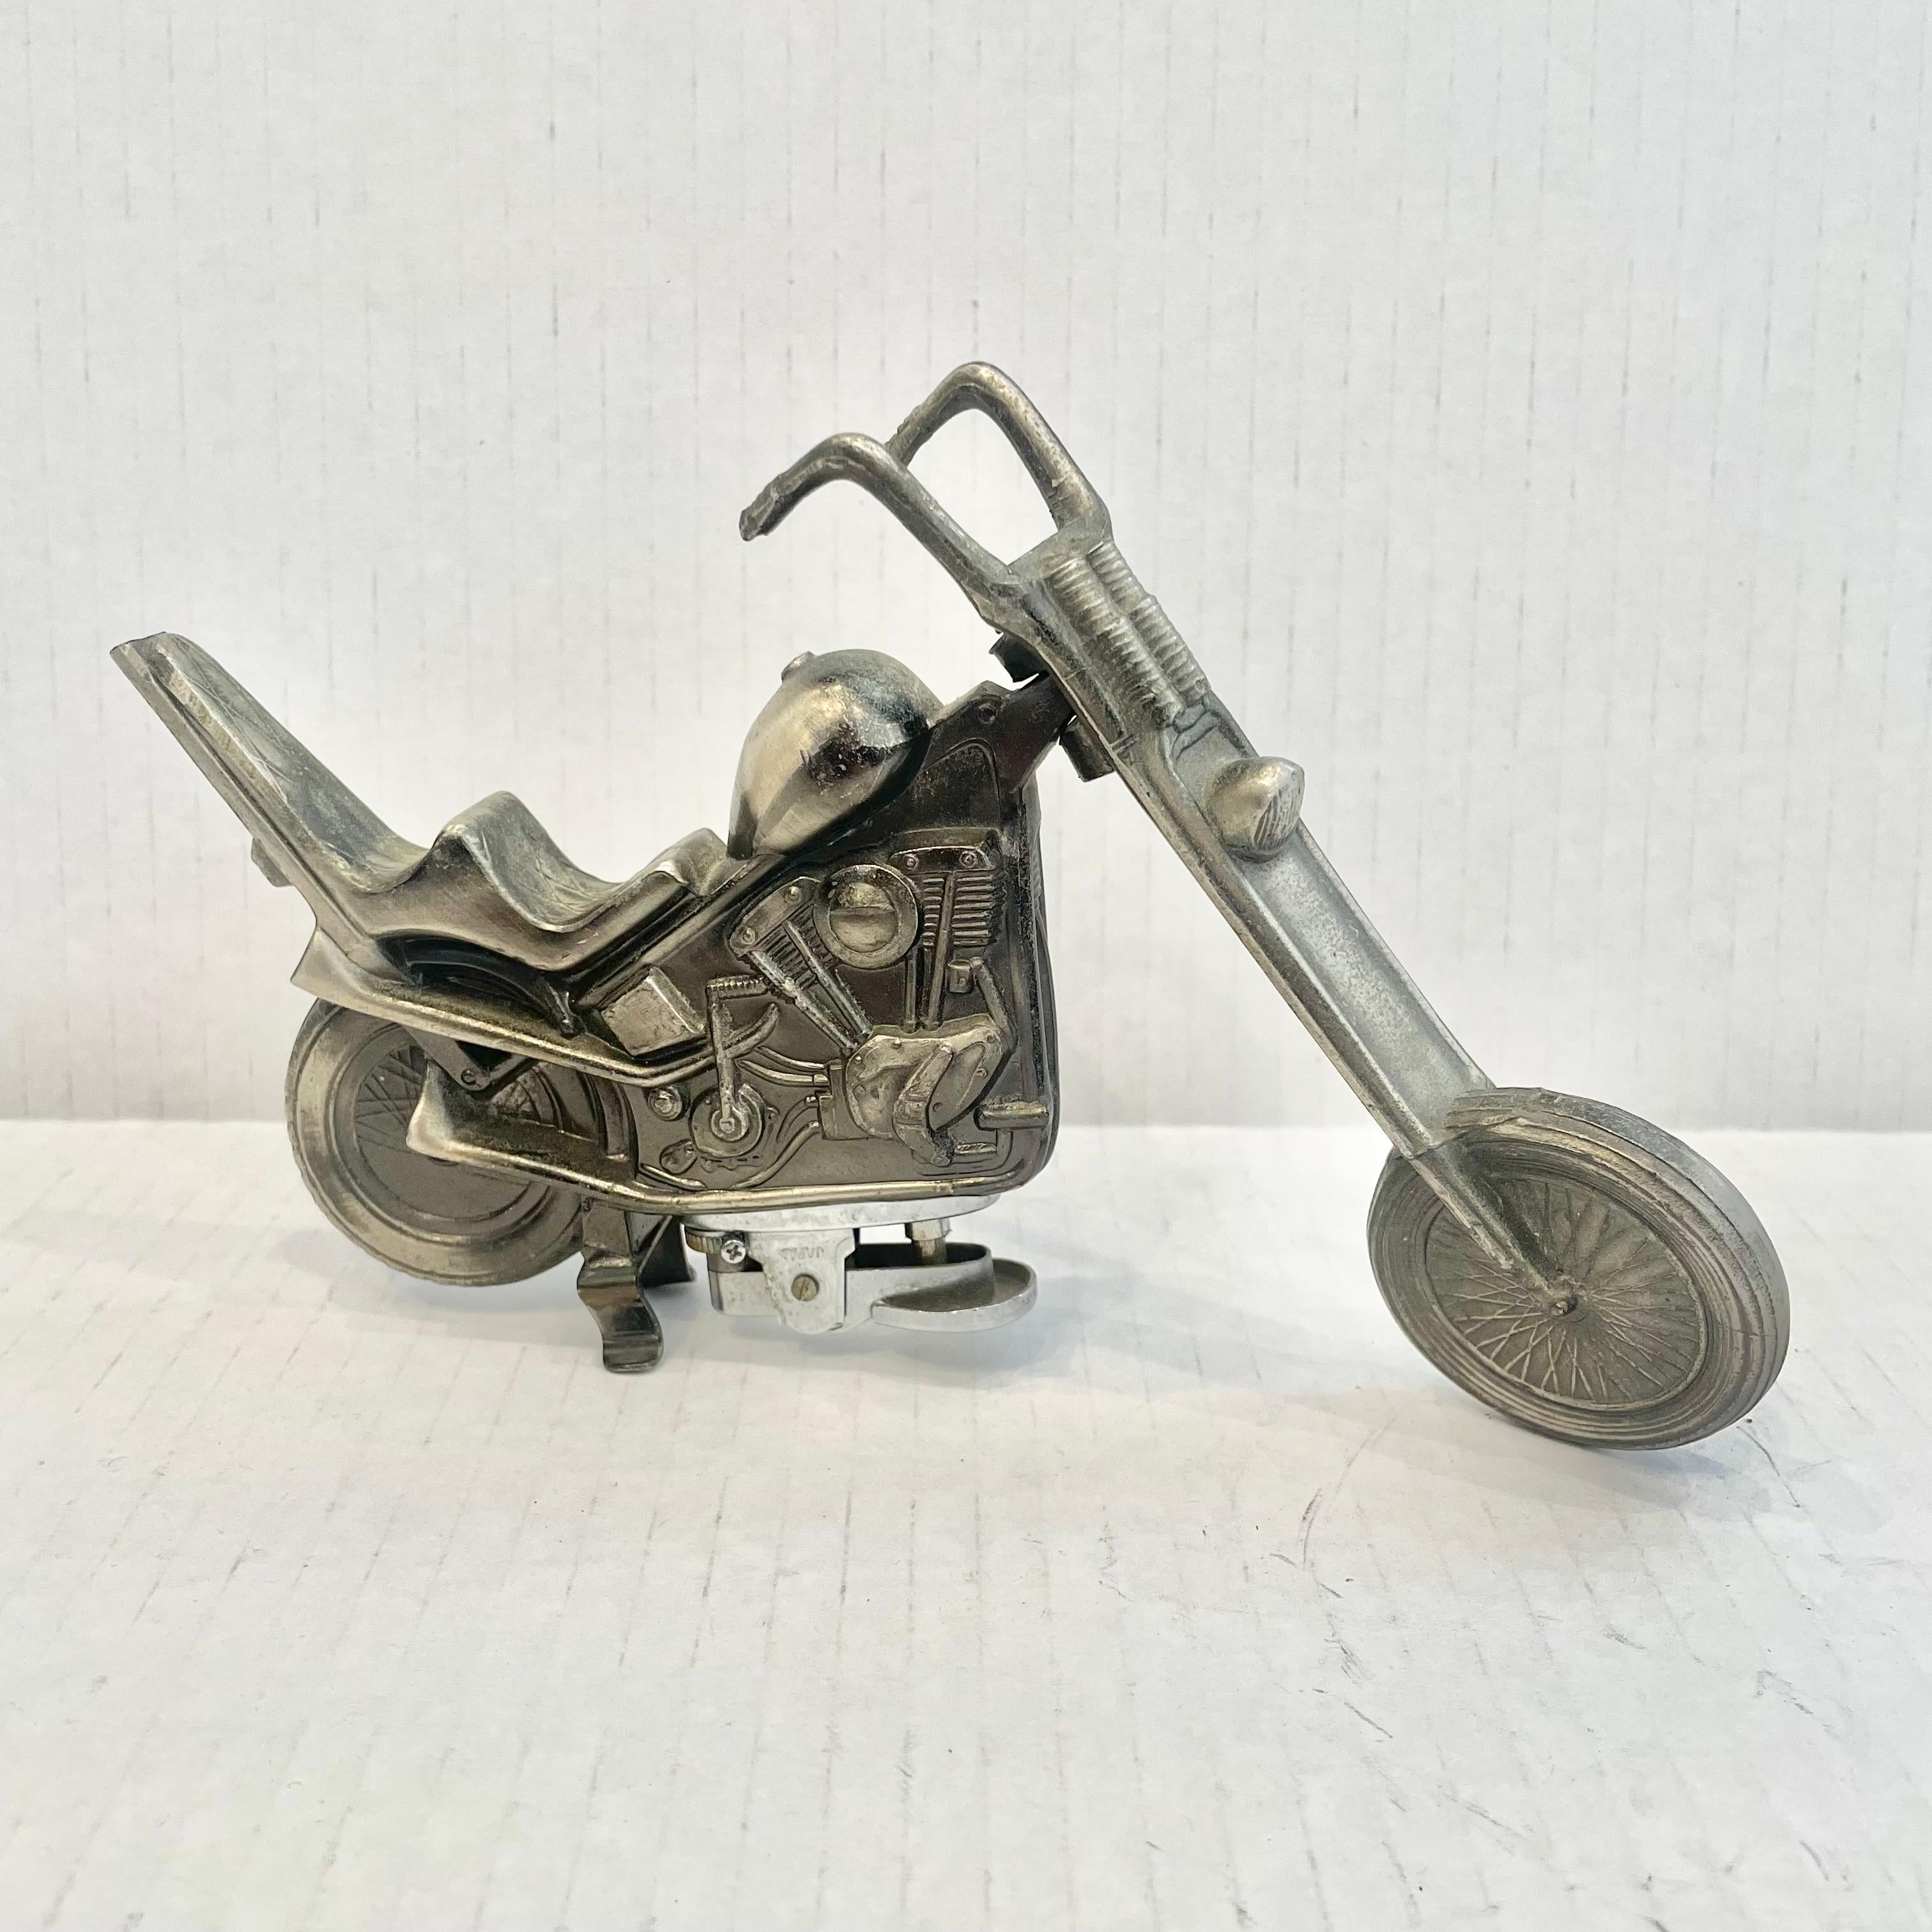 Cooles Vintage-Tischfeuerzeug in Form eines zweisitzigen Chopper-Motorrads. Vollständig aus Metall mit einem hohlen Körper. Schöne brünierte Silber Farbe mit komplizierten Details. Die Spitze der Rückenlehne ist abgebrochen. Ein cooles Accessoire